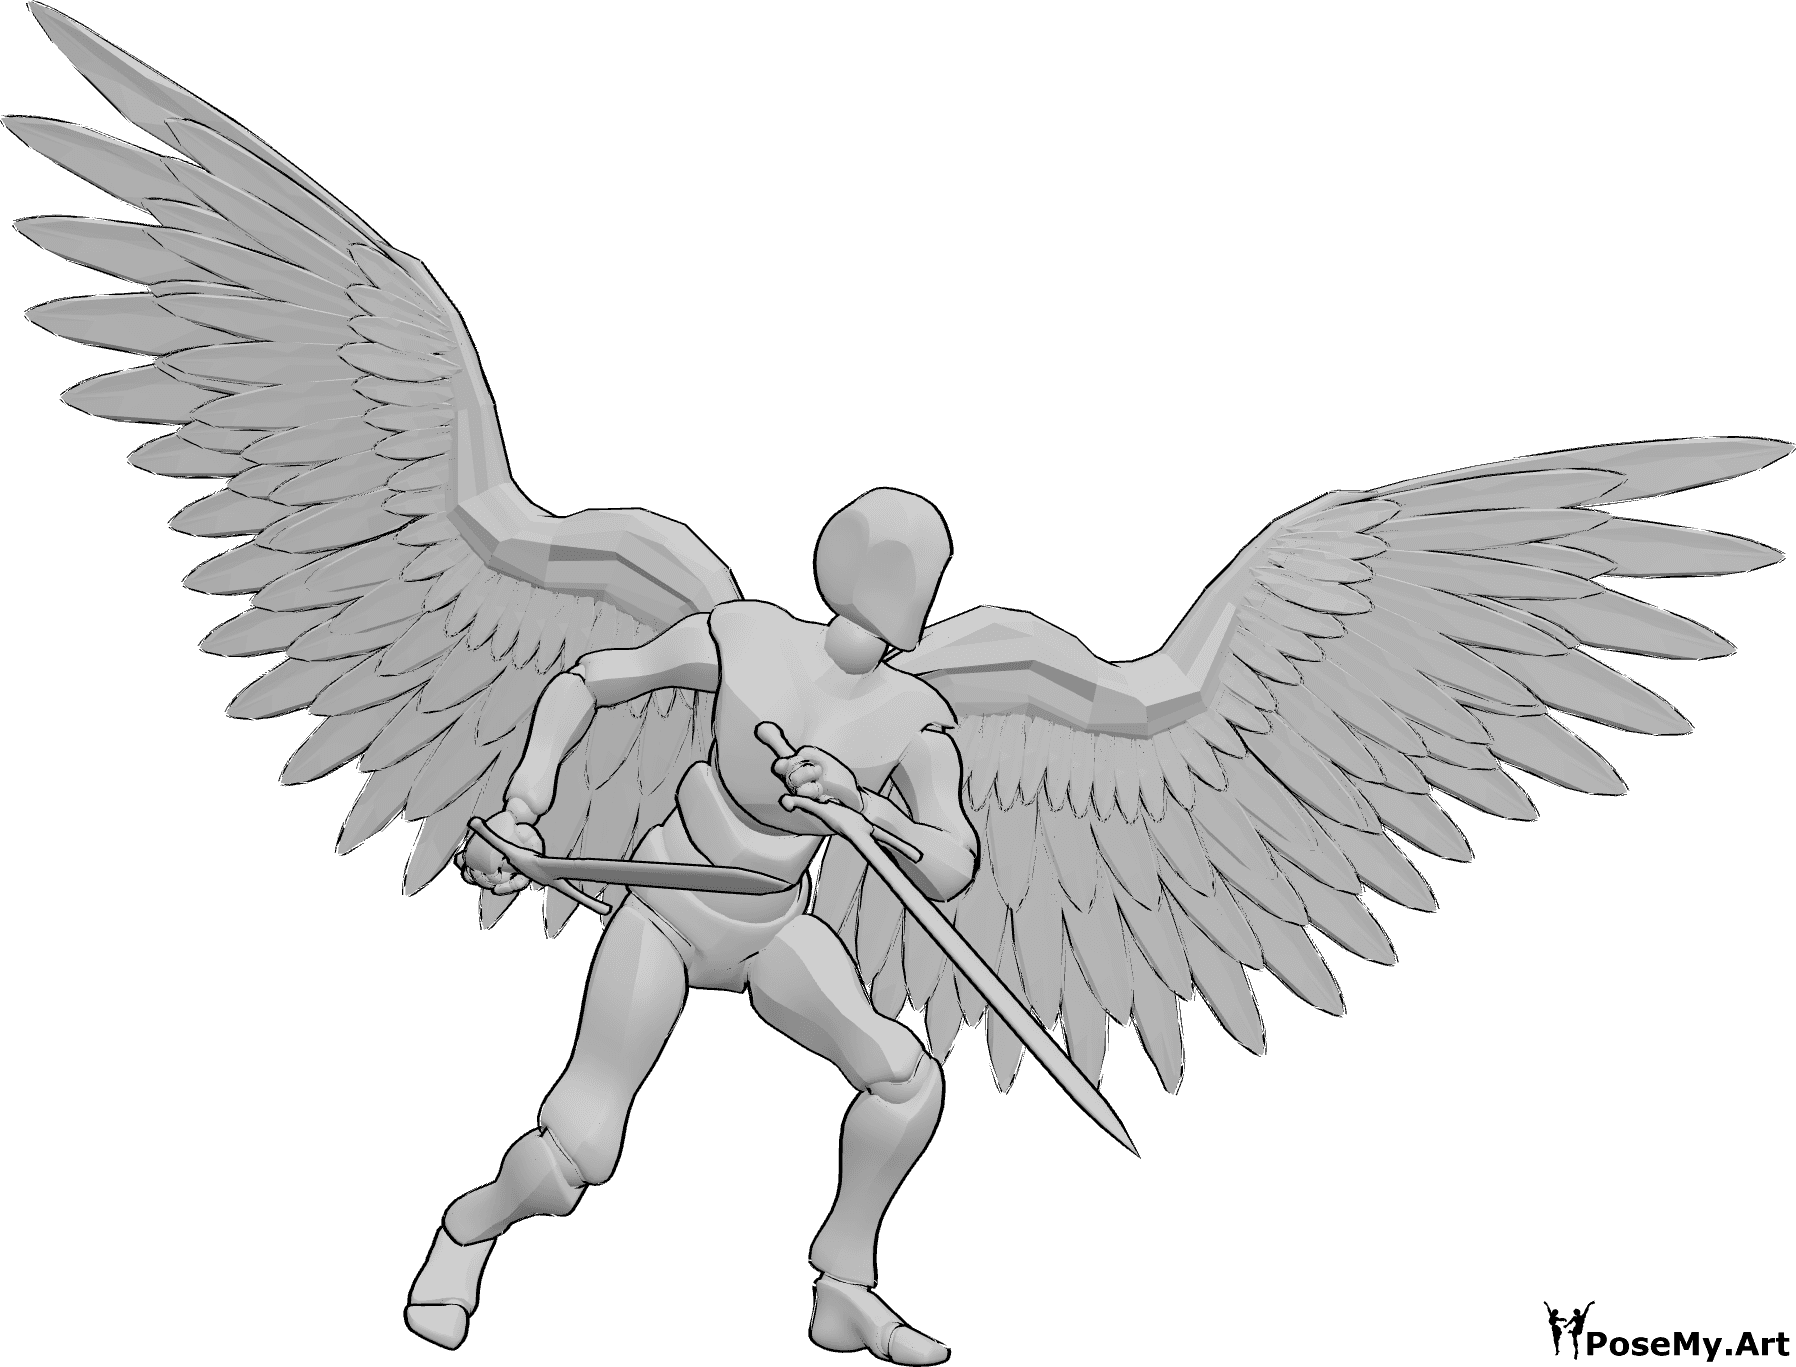 Posen-Referenz- Männliche Engel Schwerter Pose - Männlicher Engel steht und hält zwei große Schwerter, bereit zu kämpfen Pose